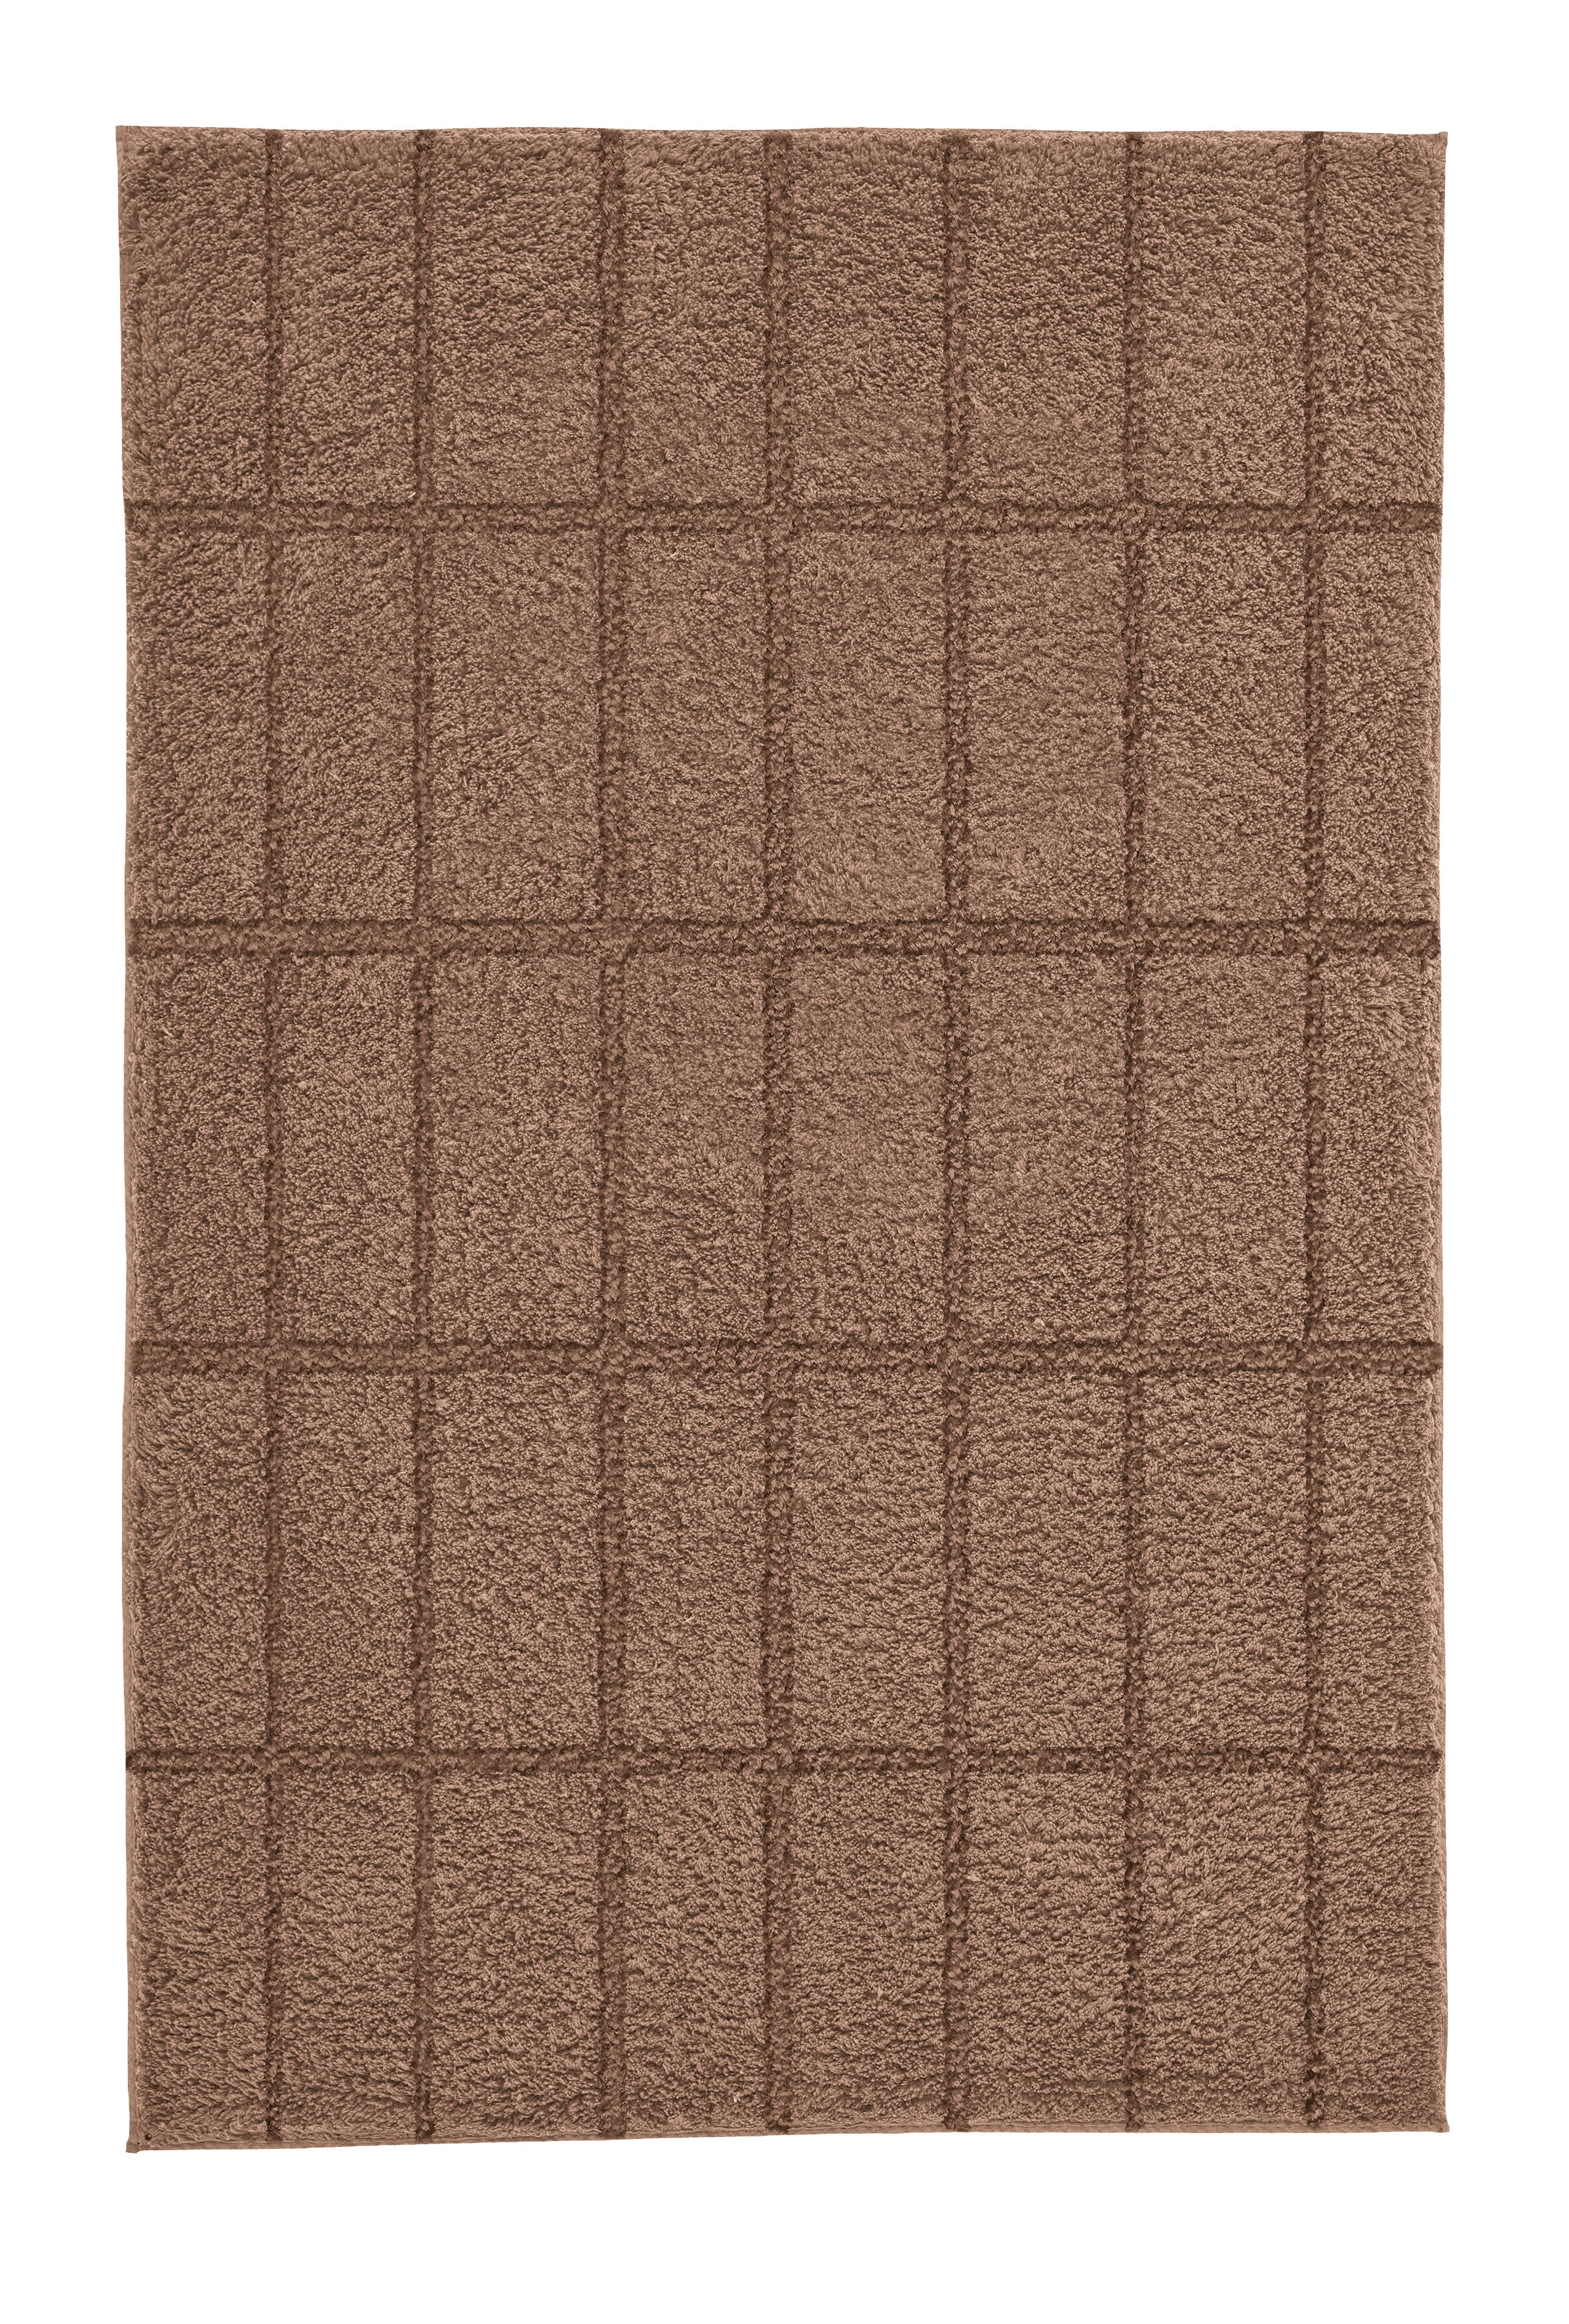 Badteppich, Tiles, Braisl, 60x100 cm